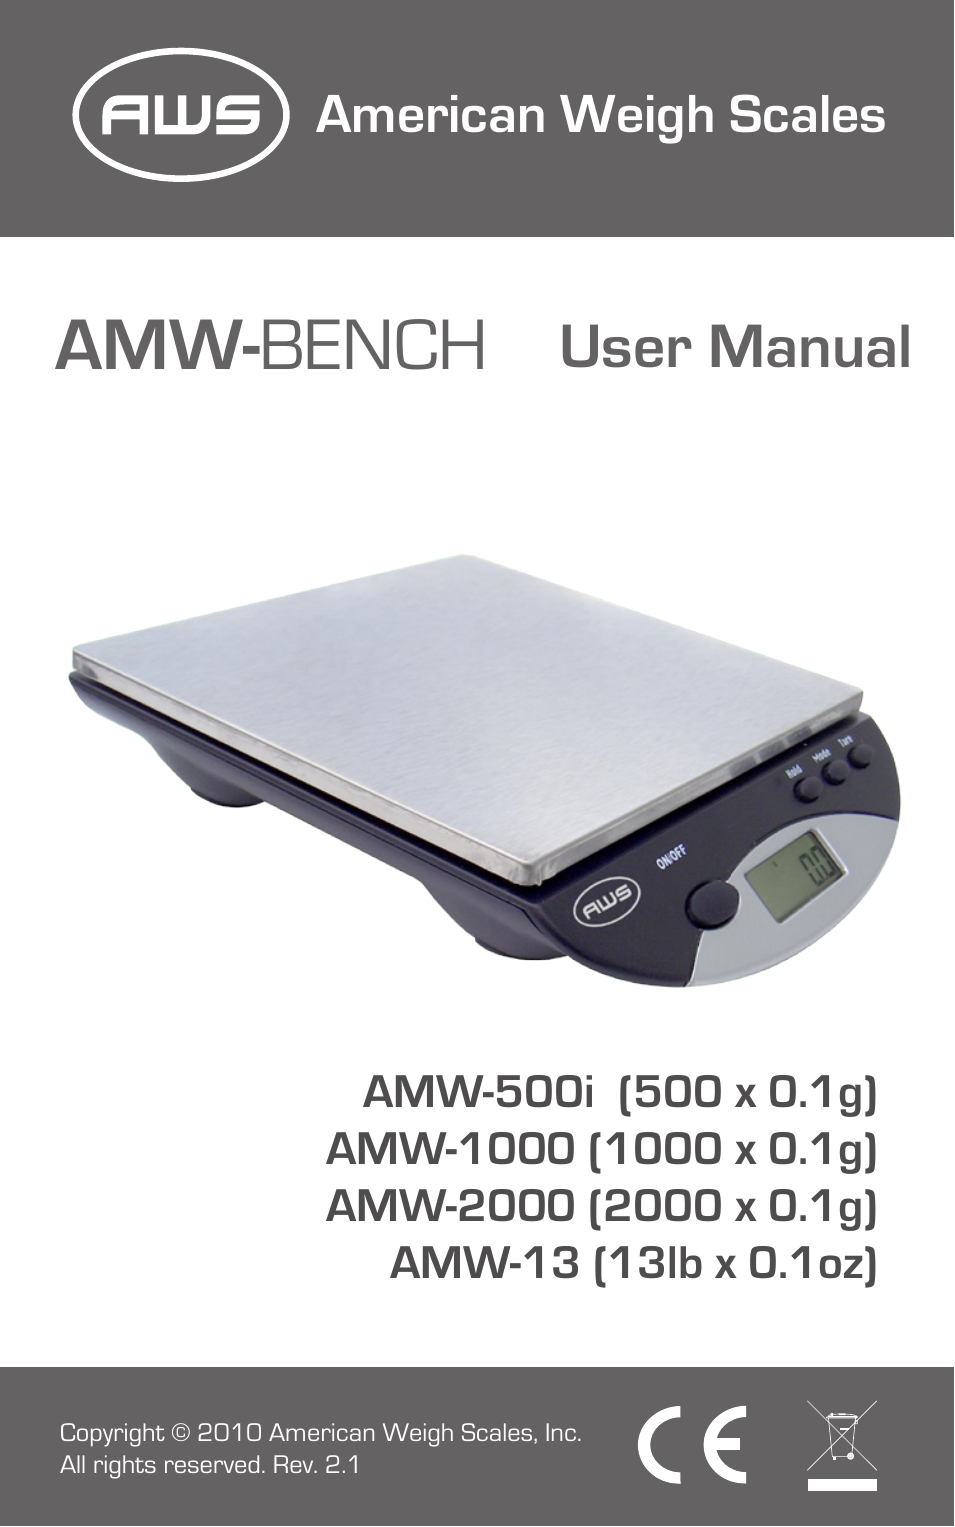 AMW-500i